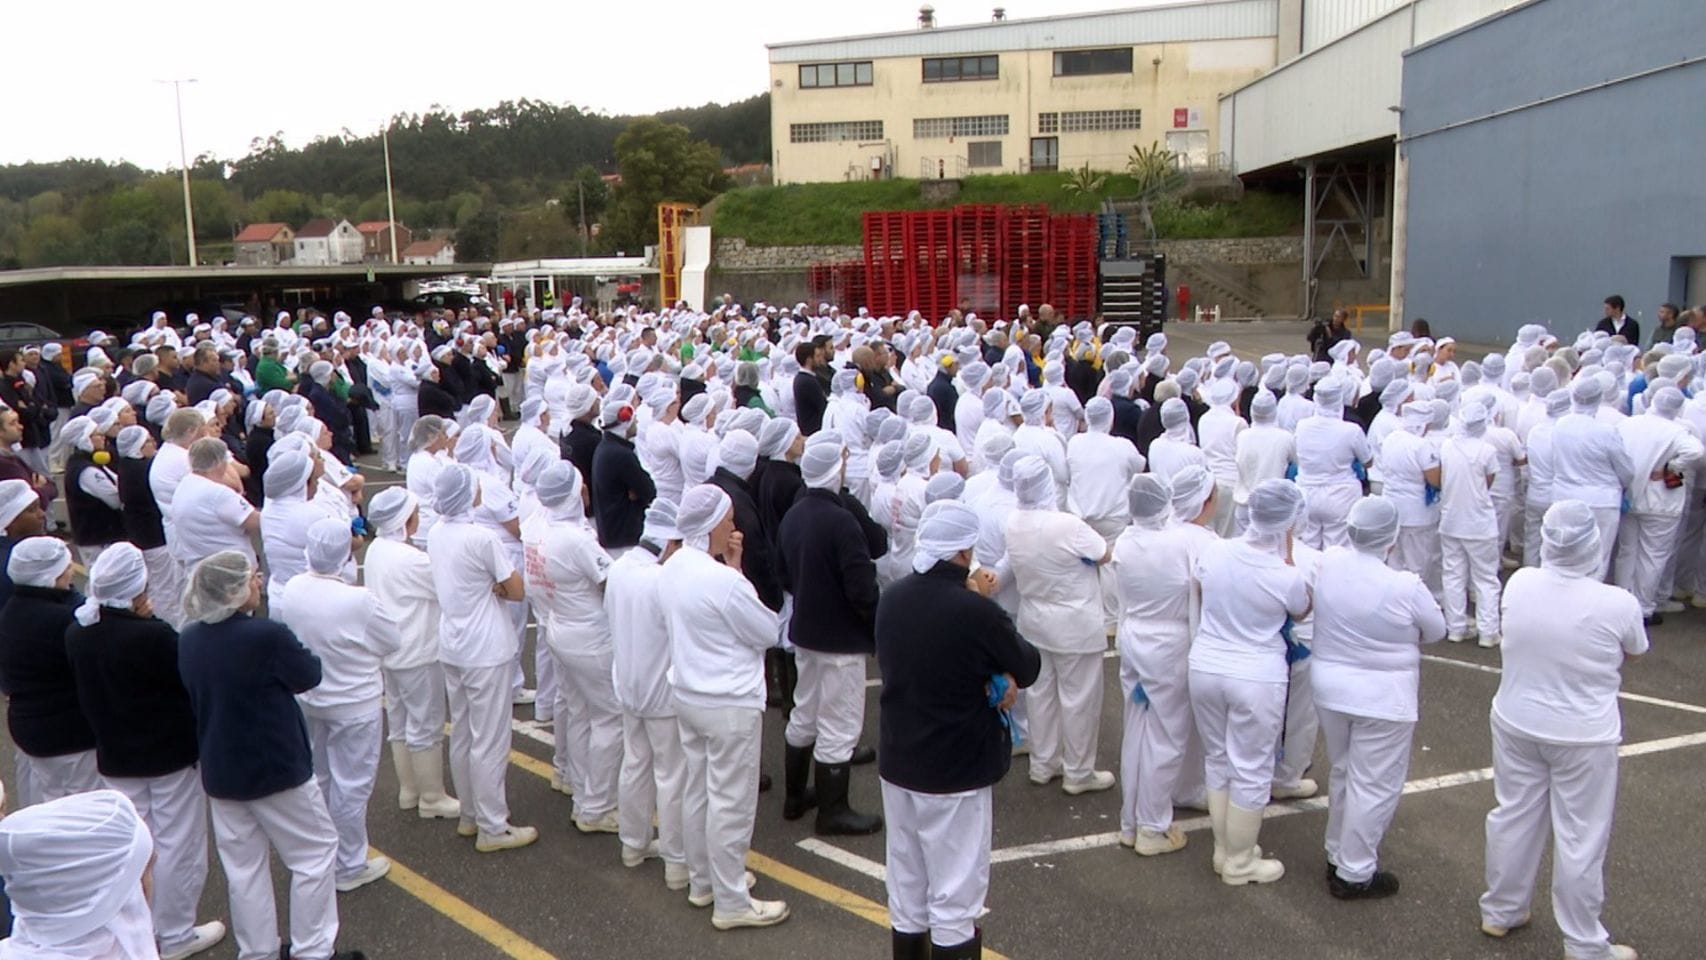 Concentración de trabajadores de la planta de Jealsa en Boiro en memoria de la mujer asesinada por su expareja en Palmeira, Ribeira (A Coruña)
SOCIEDAD AUTONOMÍAS